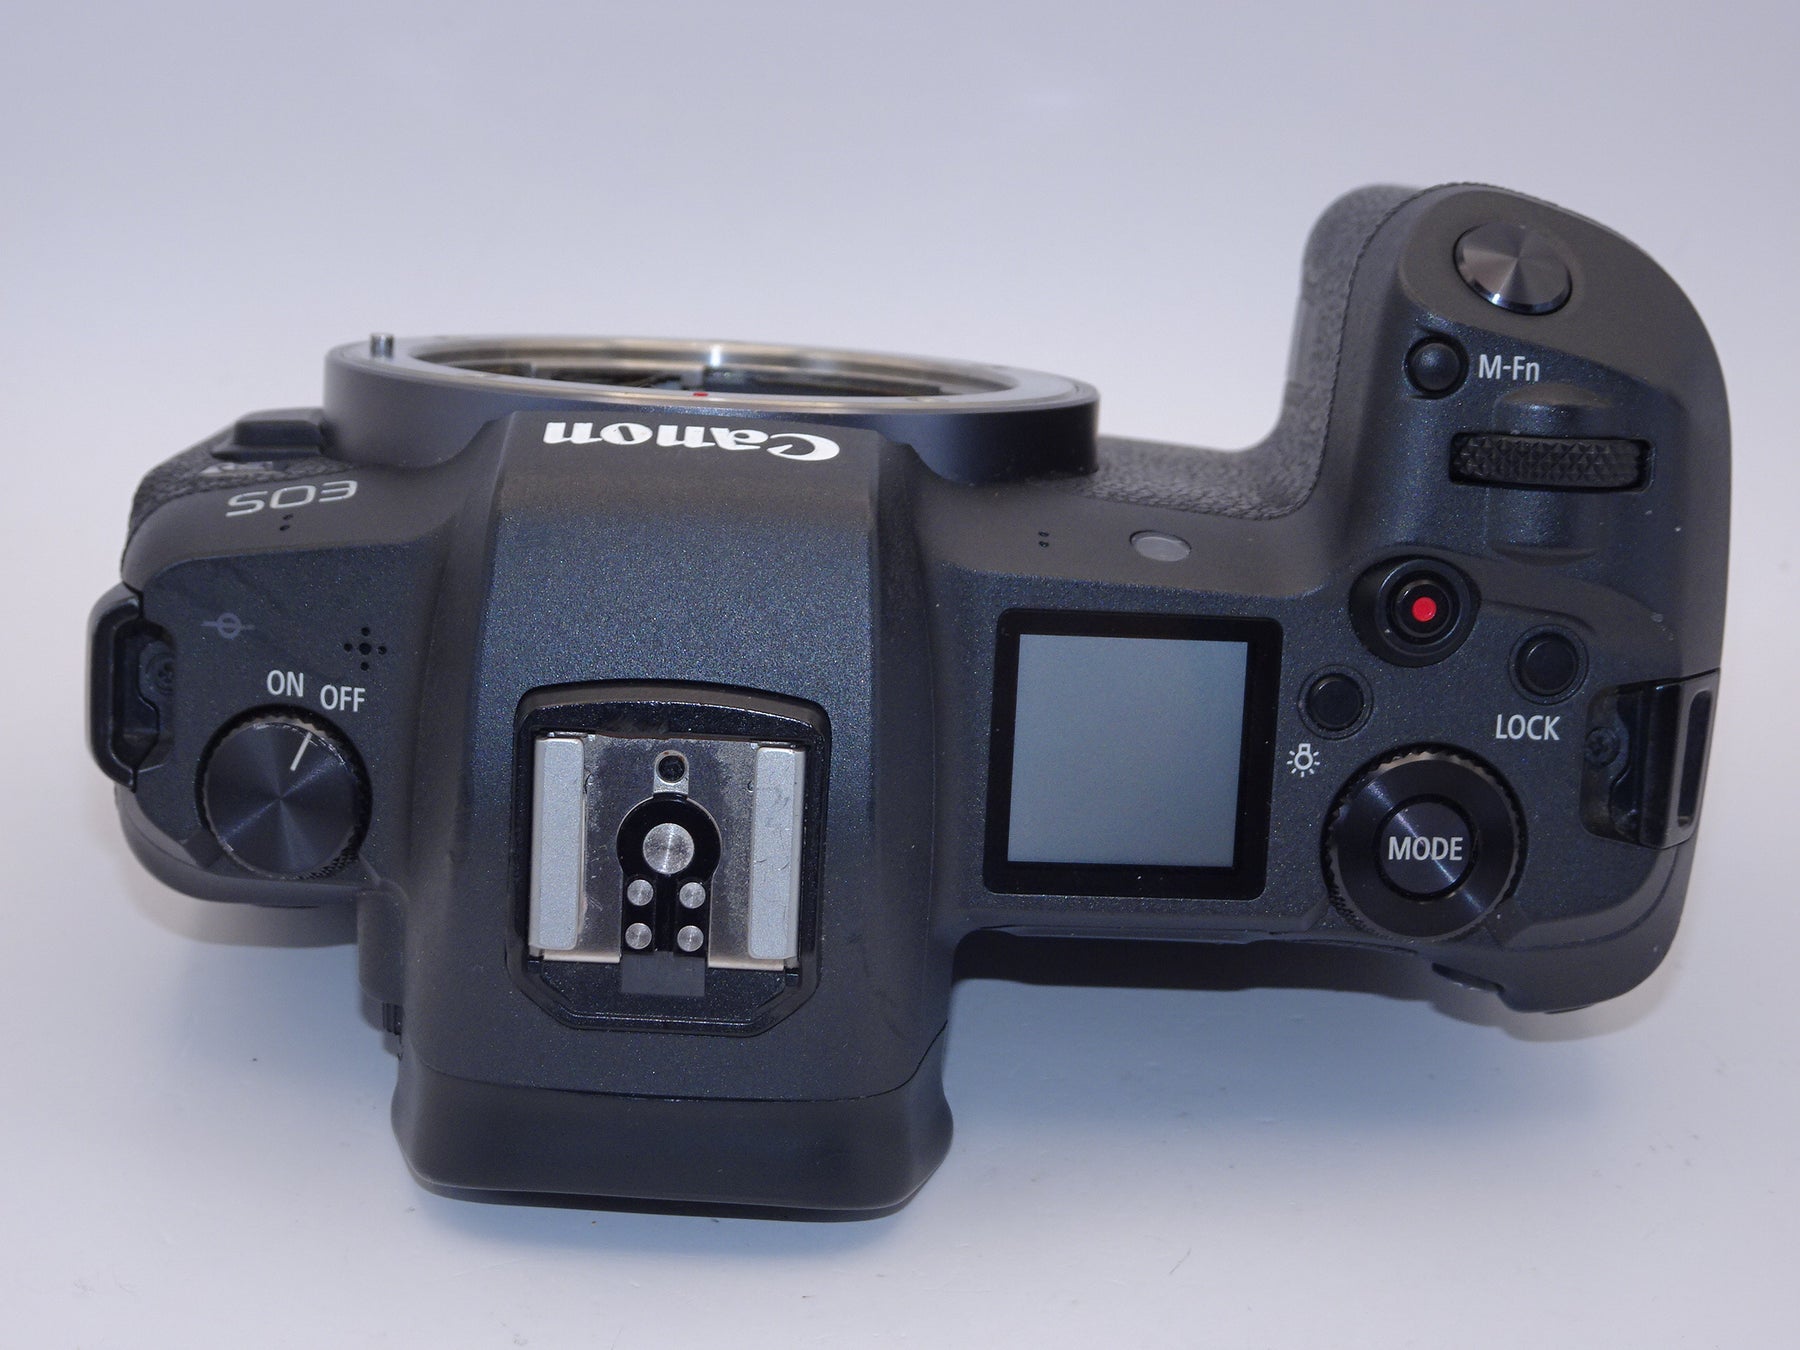 【外観特上級】Canon ミラーレス一眼カメラ EOS R ボディー EOSR